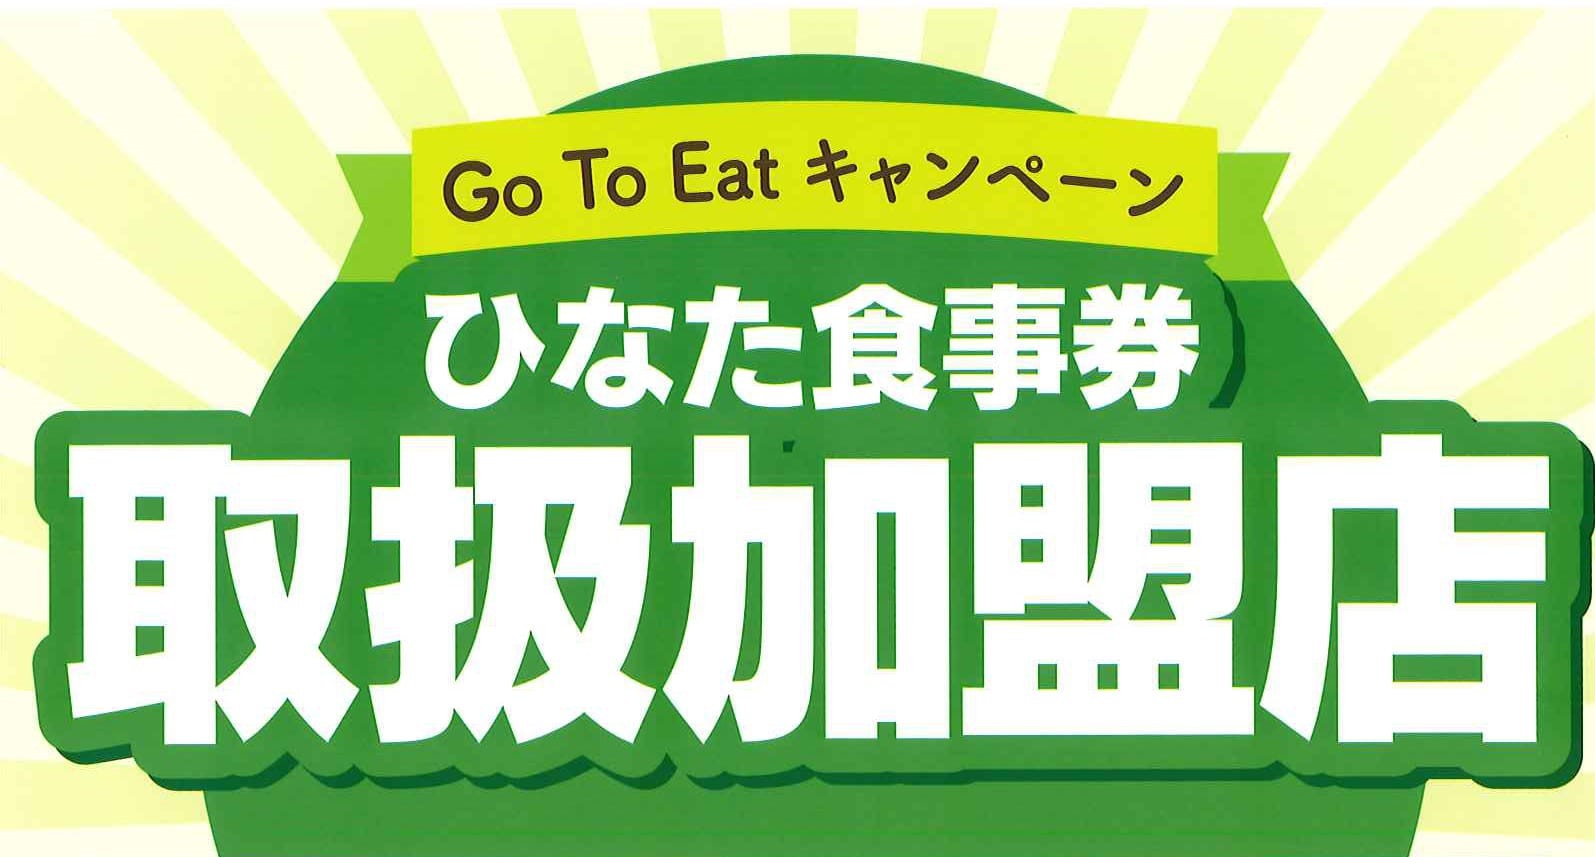 【GoToEatキャンペーン】ひなた食事券対象店舗です。